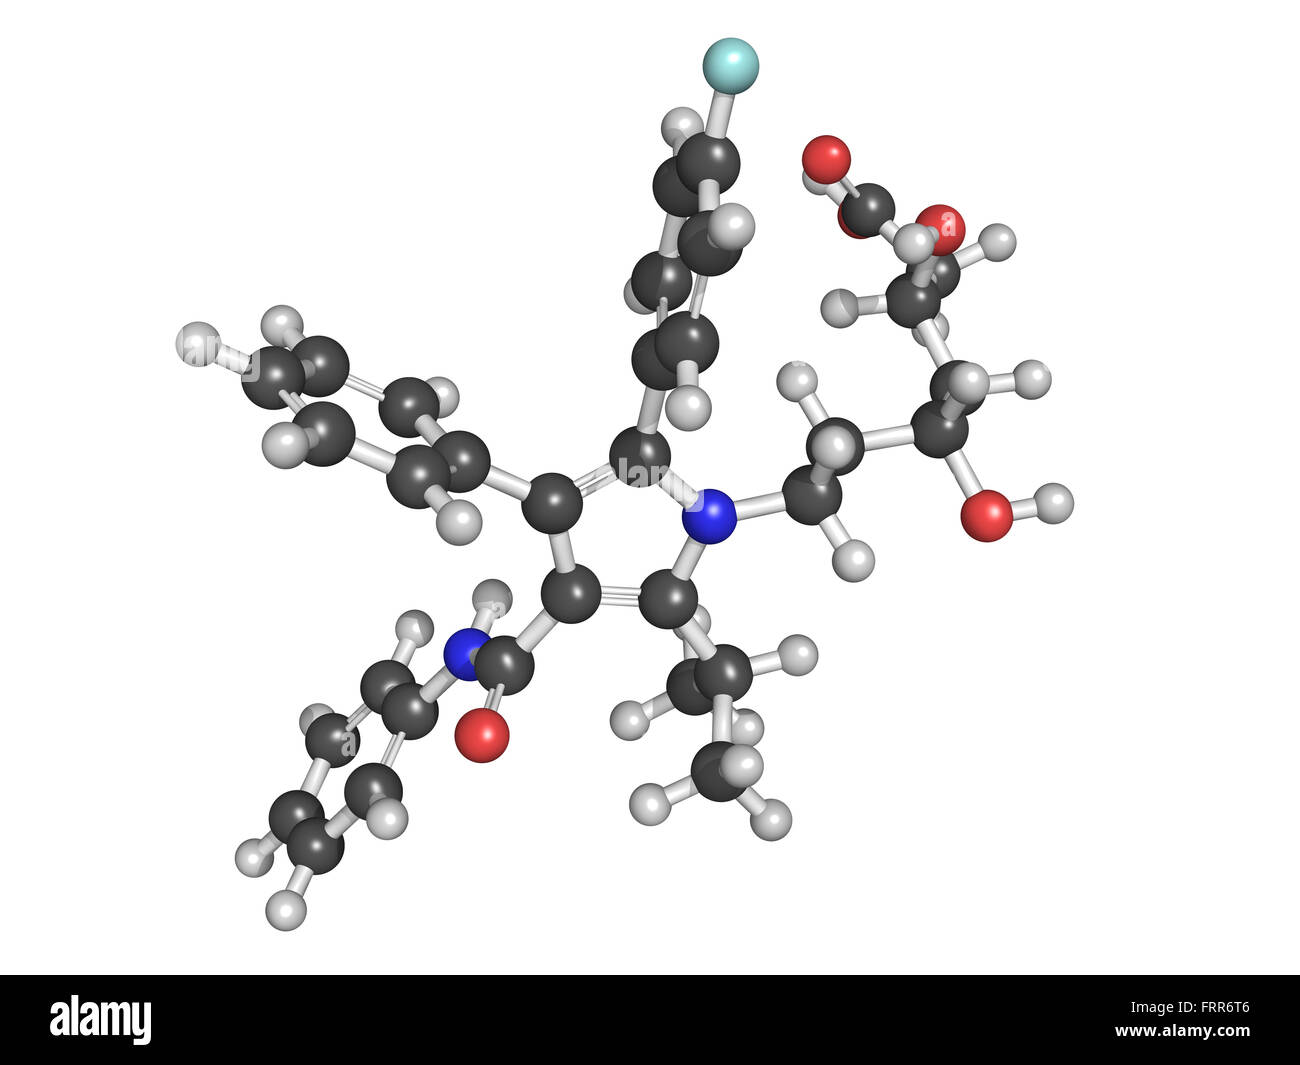 Atorvastatin cholesterinsenkende Medikamente (Statine Klasse), chemische Struktur. Atome sind als Kugeln mit herkömmlichen co vertreten. Stockfoto